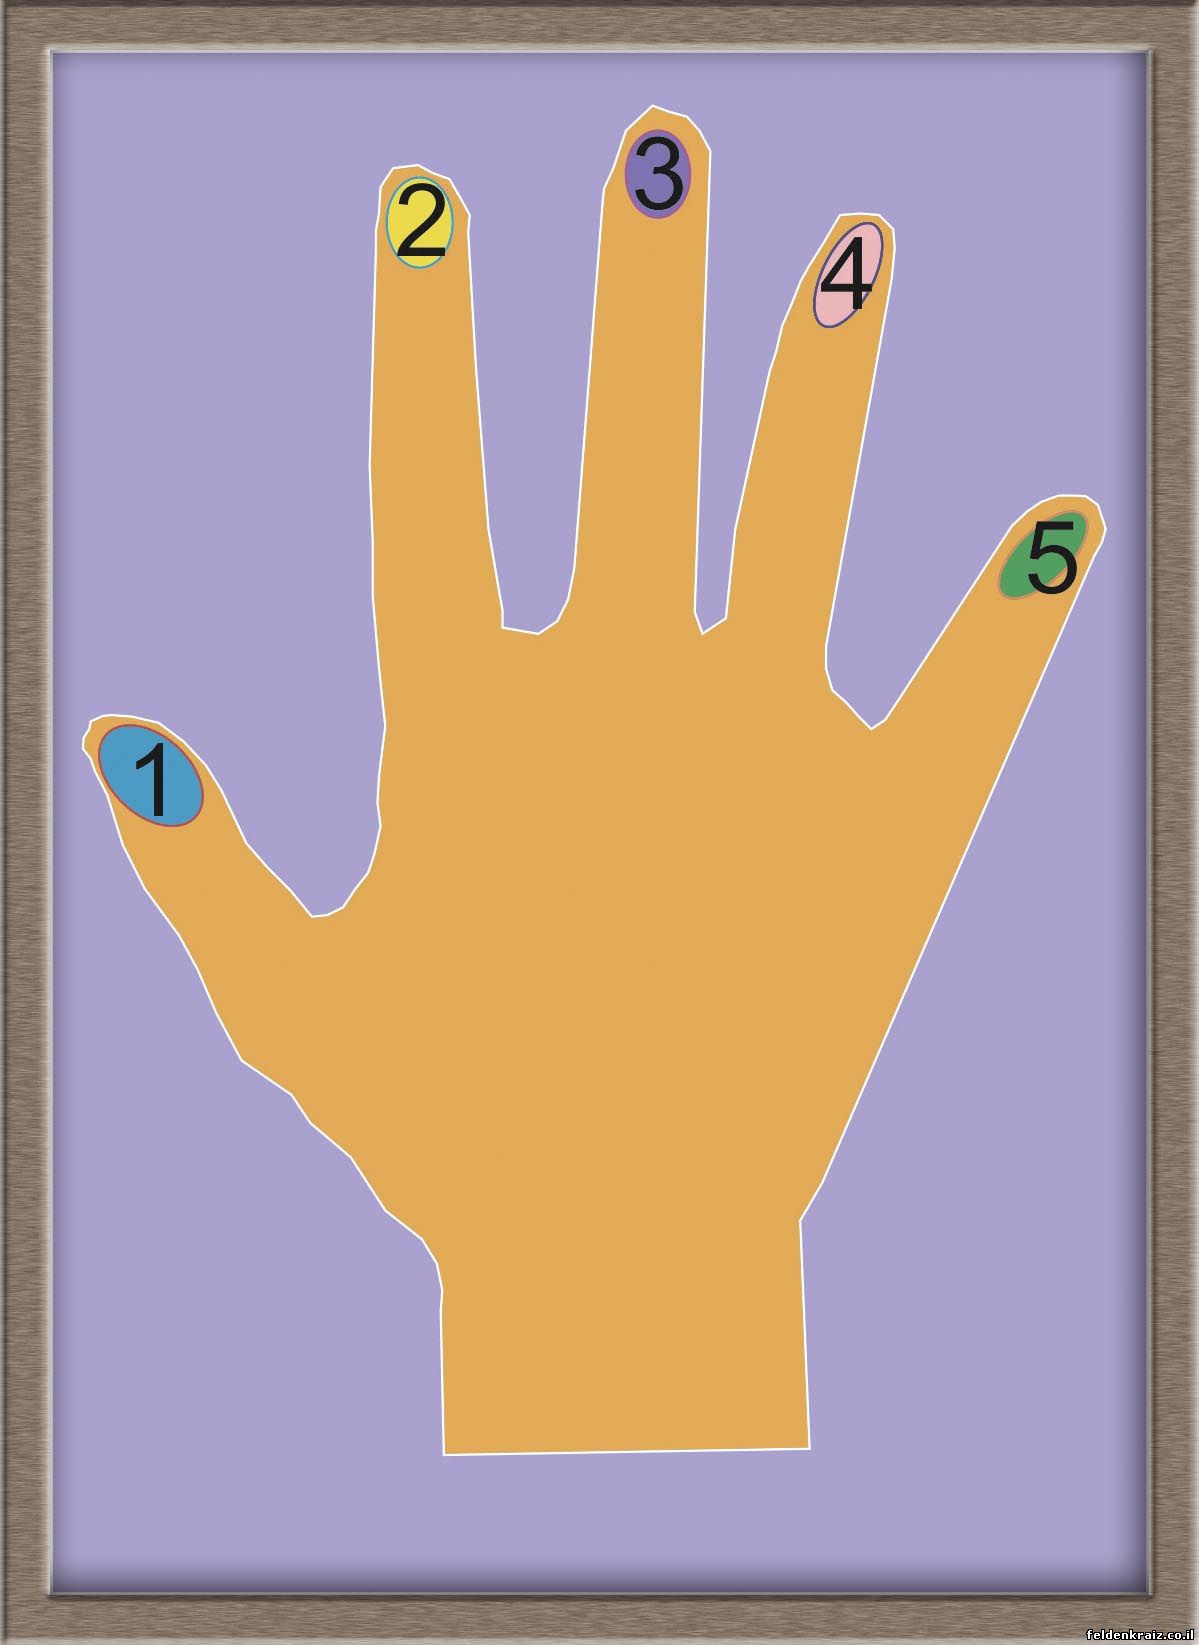 На рисунке дано изображение ладони для упражнения, известного под названием «часы на руке». Даны также номера пальцев от одного (большой палец) до пяти (мизинец)